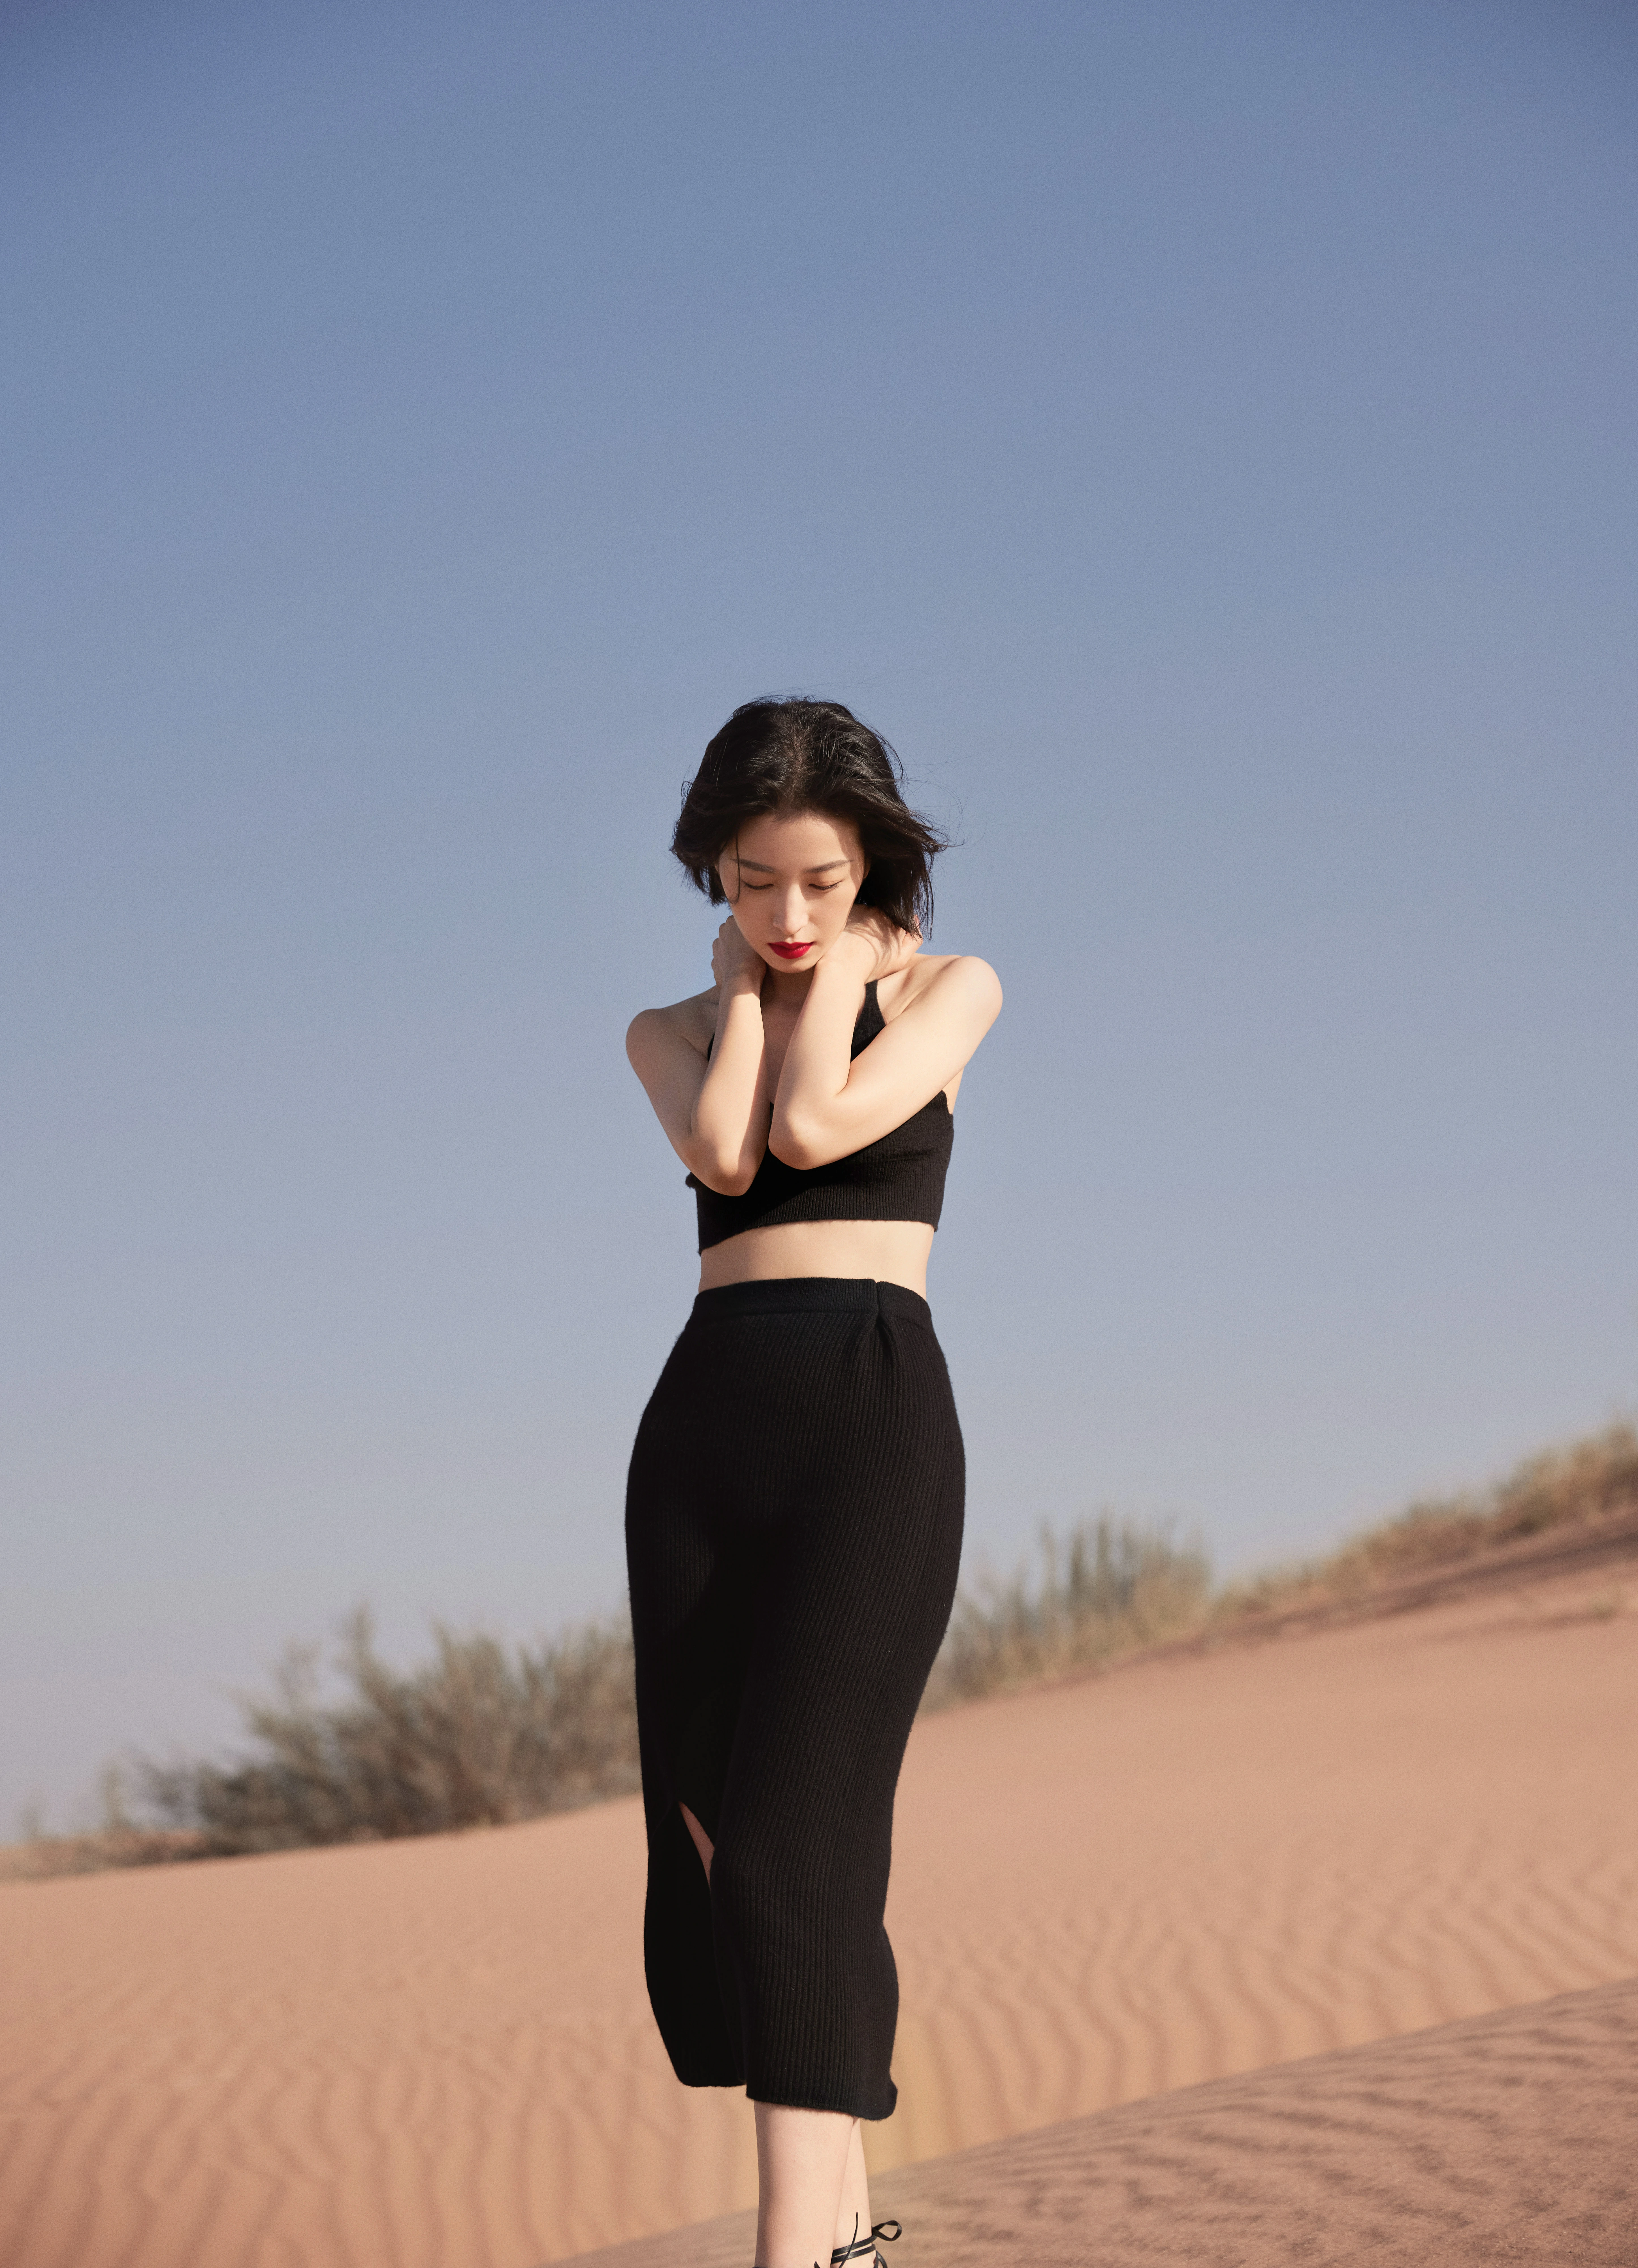 周雨彤穿修身裙身材优越 在沙漠中酷飒满分,2